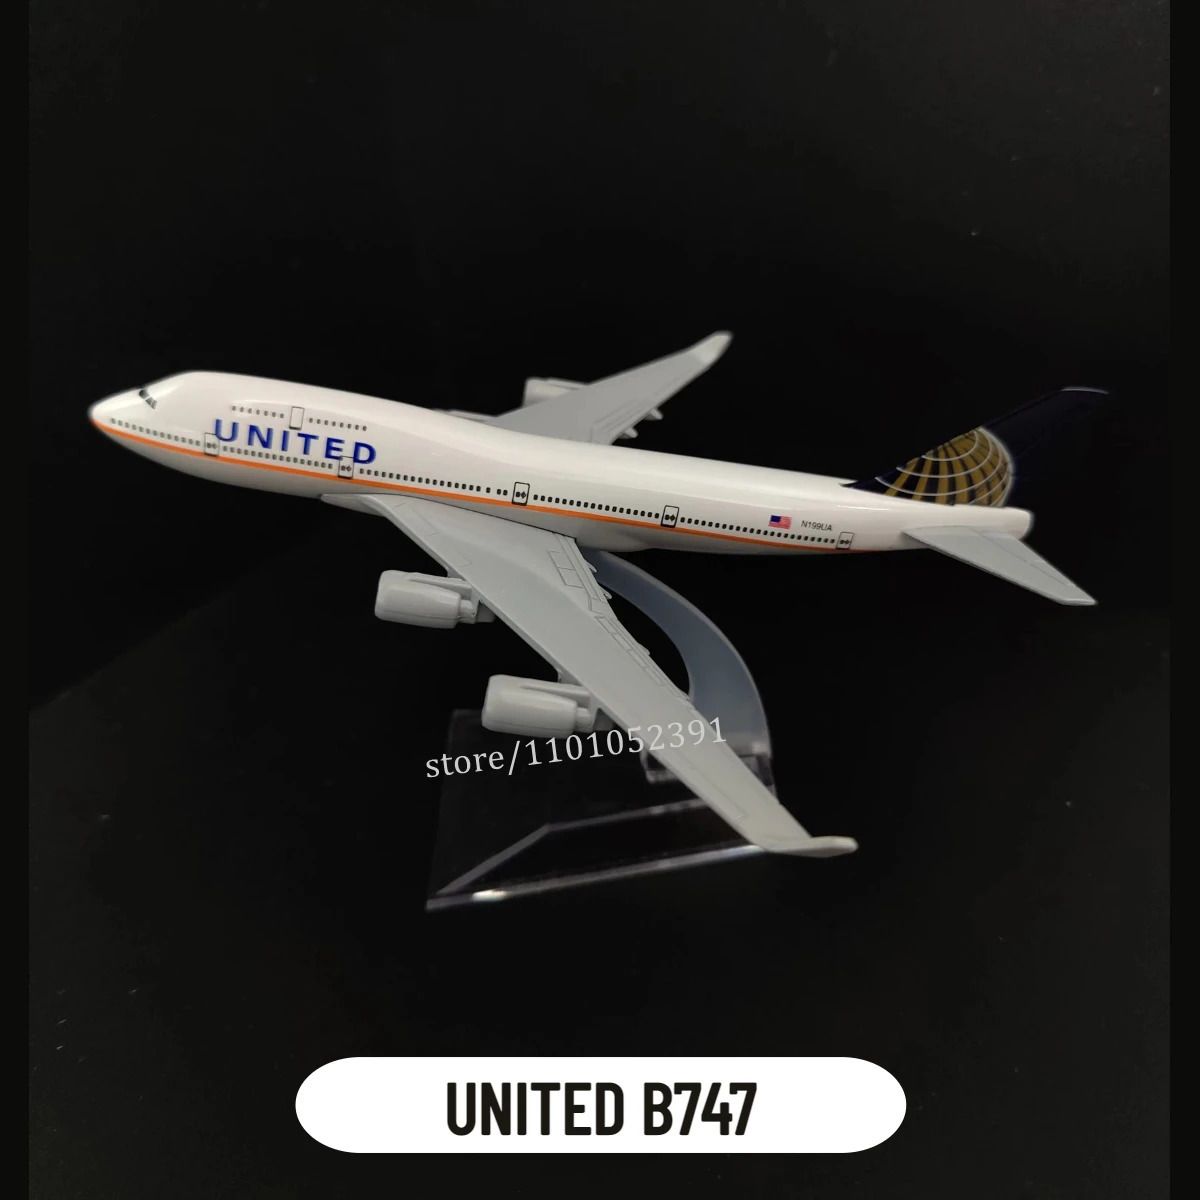 103. United B747